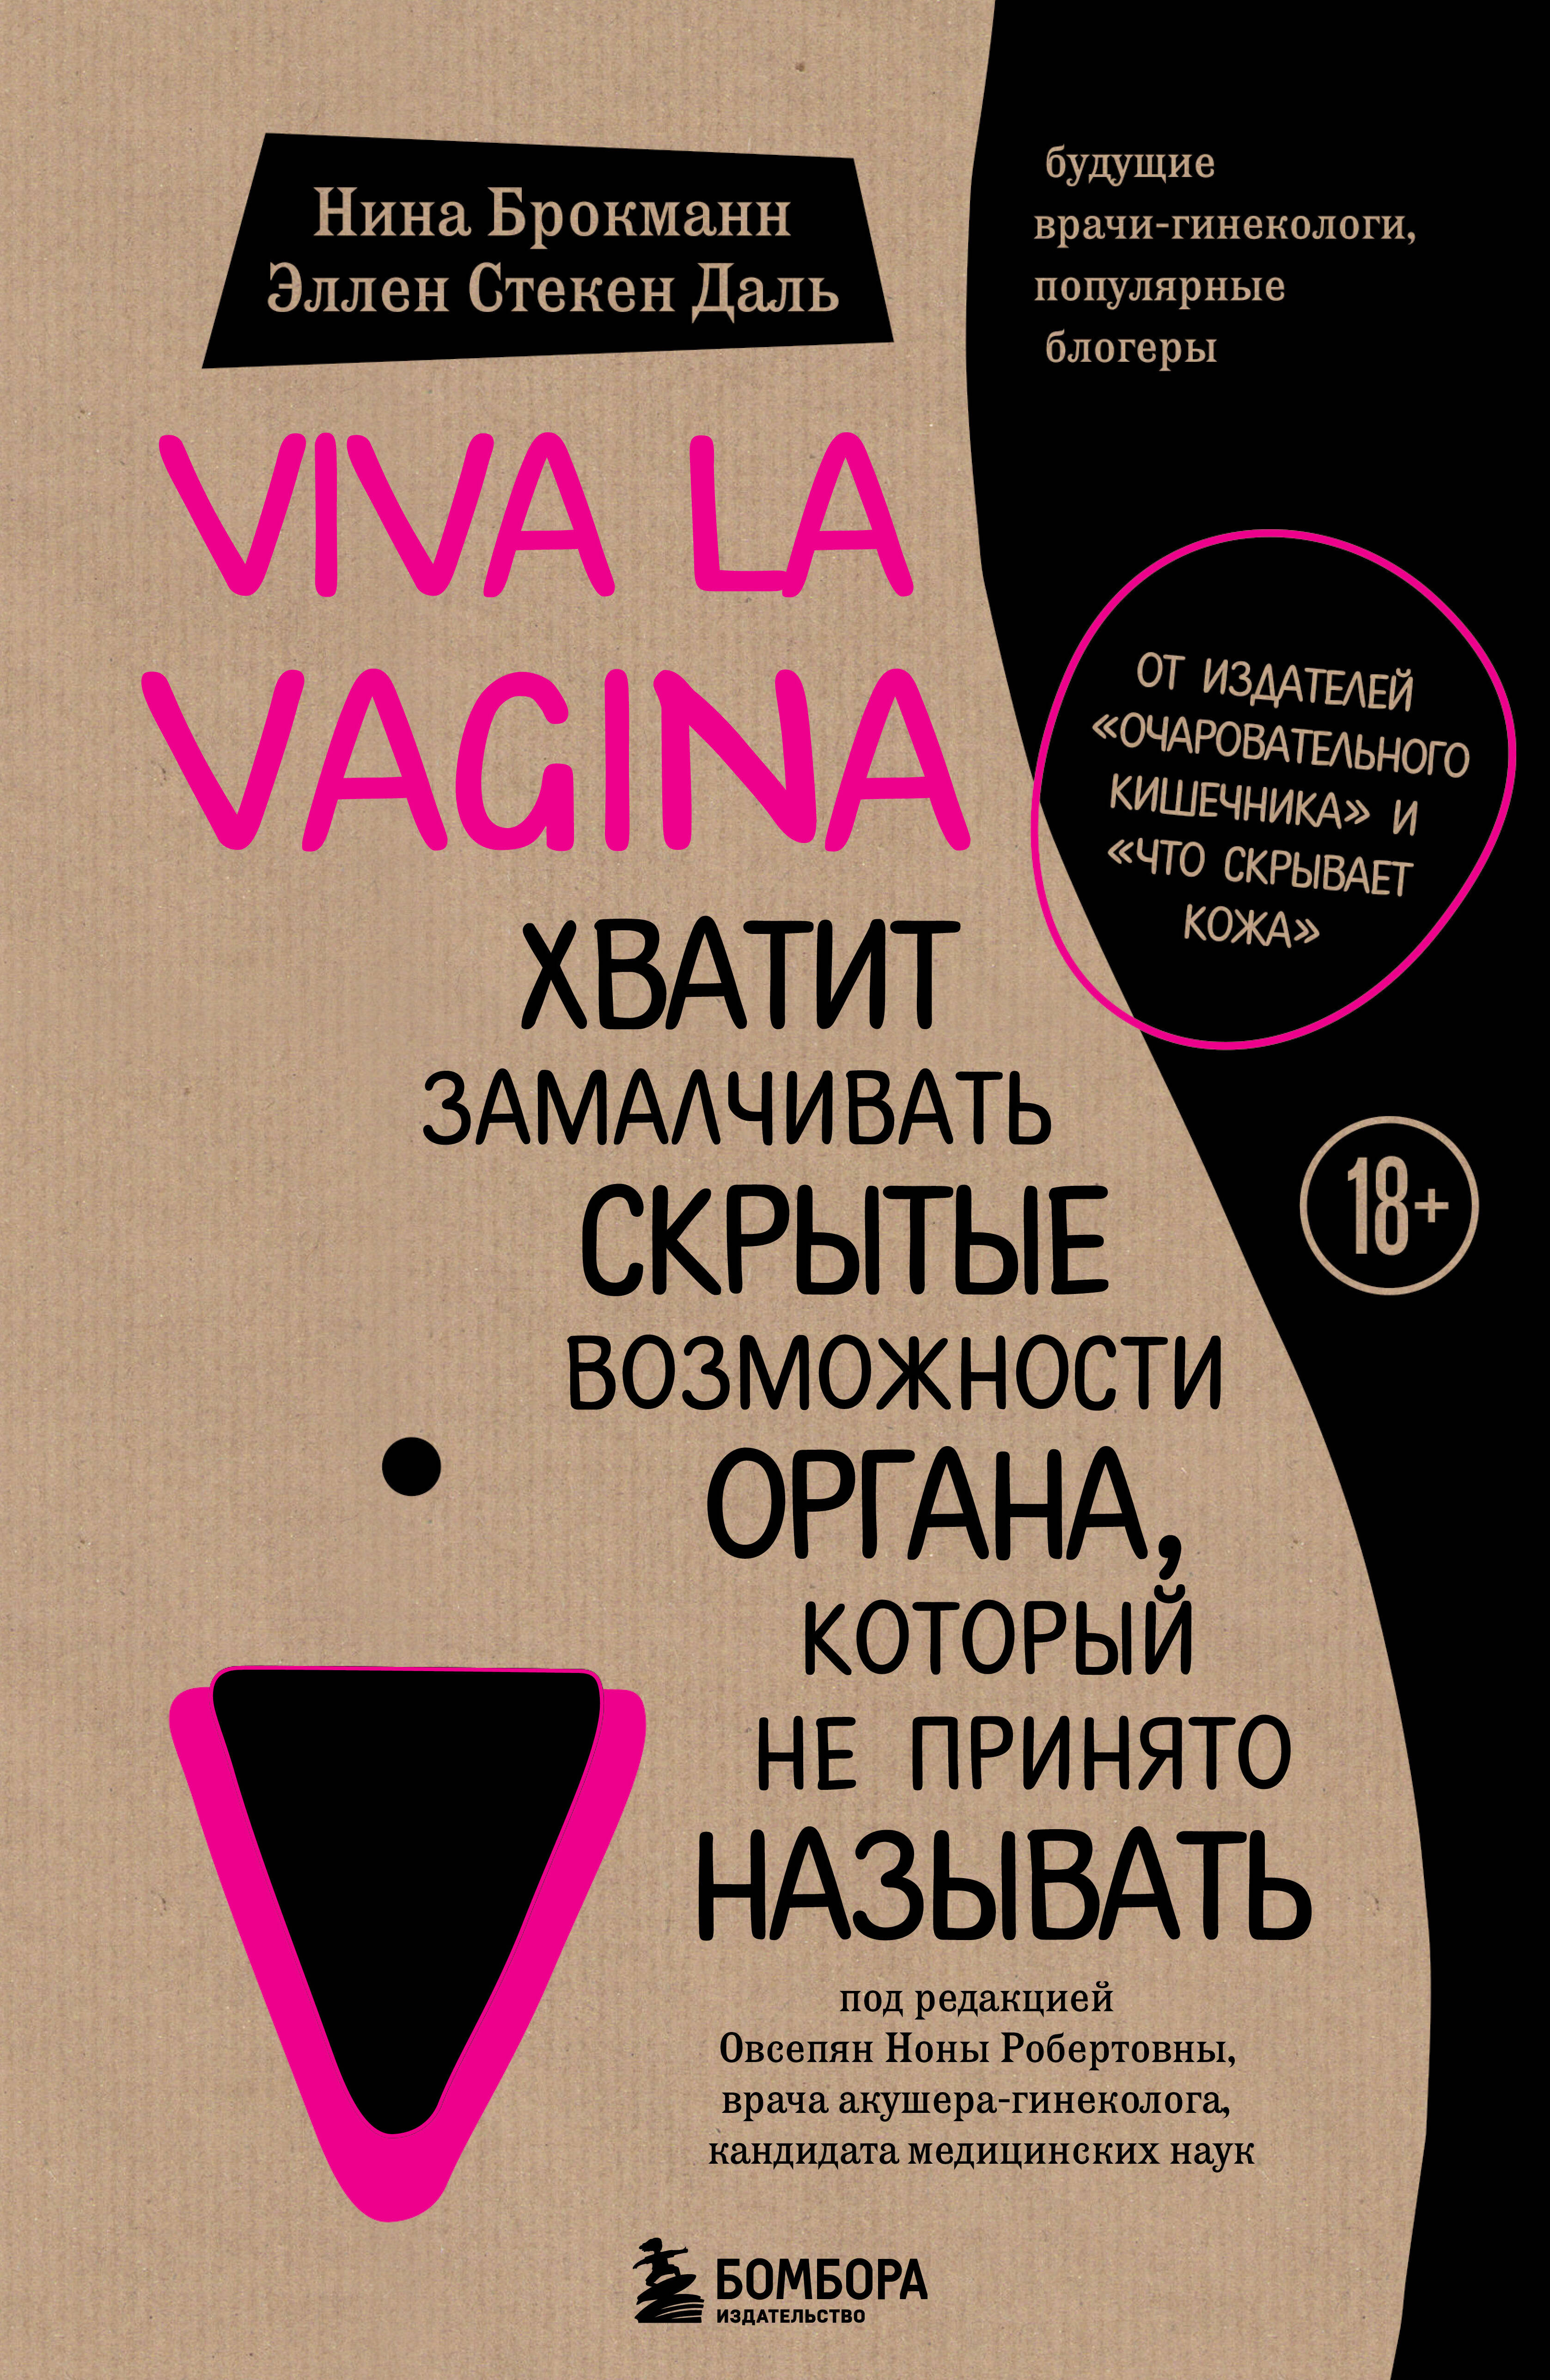 Брокманн Нина, Стекен Даль Эллен - Viva la vagina. Хватит замалчивать скрытые возможности органа, который не принято называть